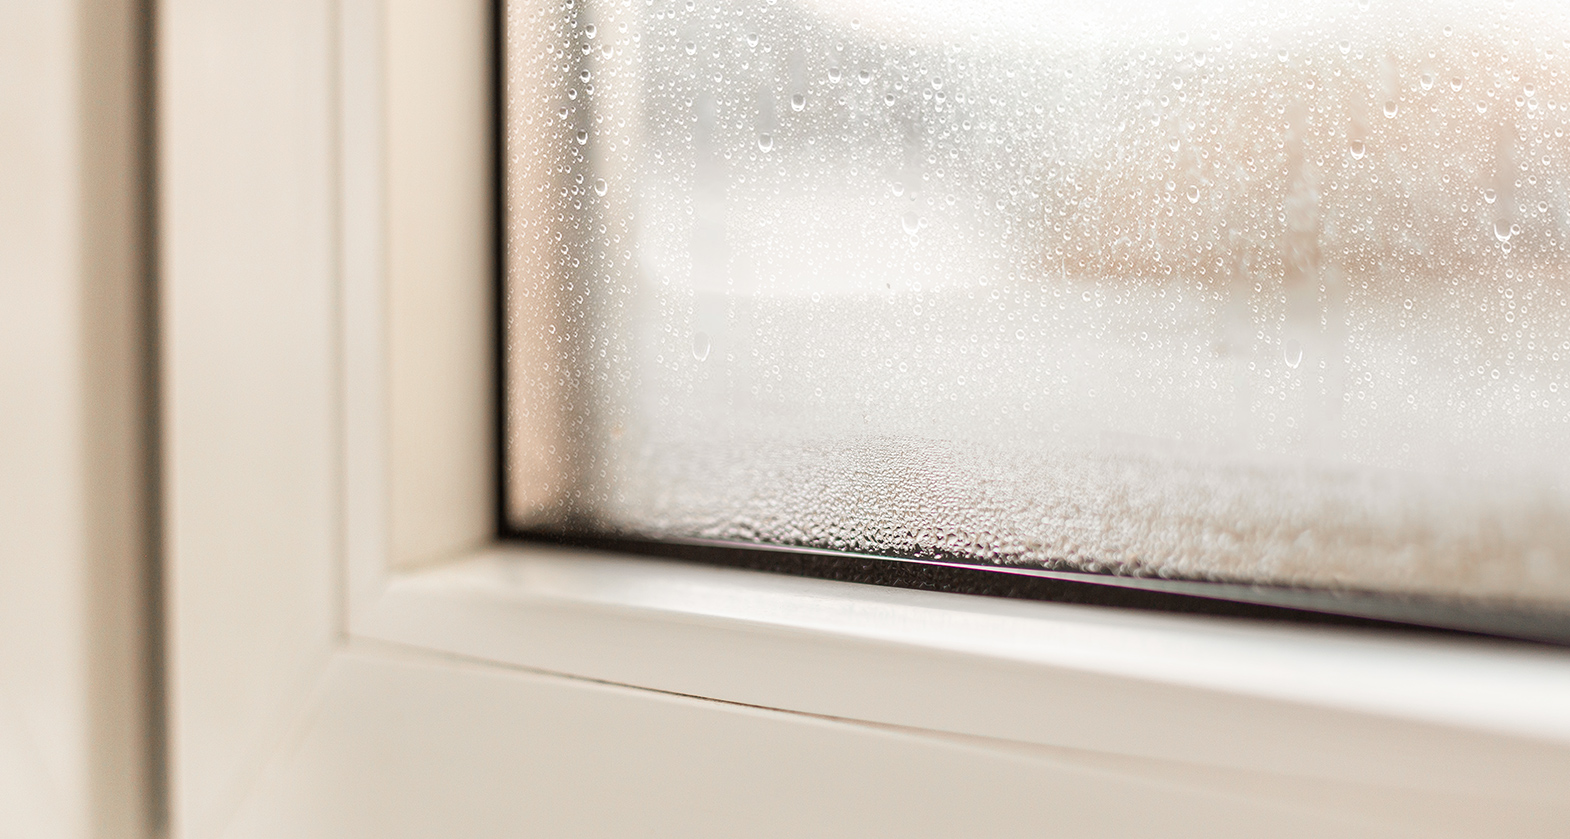 Blogartikel: Ein gutes Zeichen: Außenkondensat an Fenstern